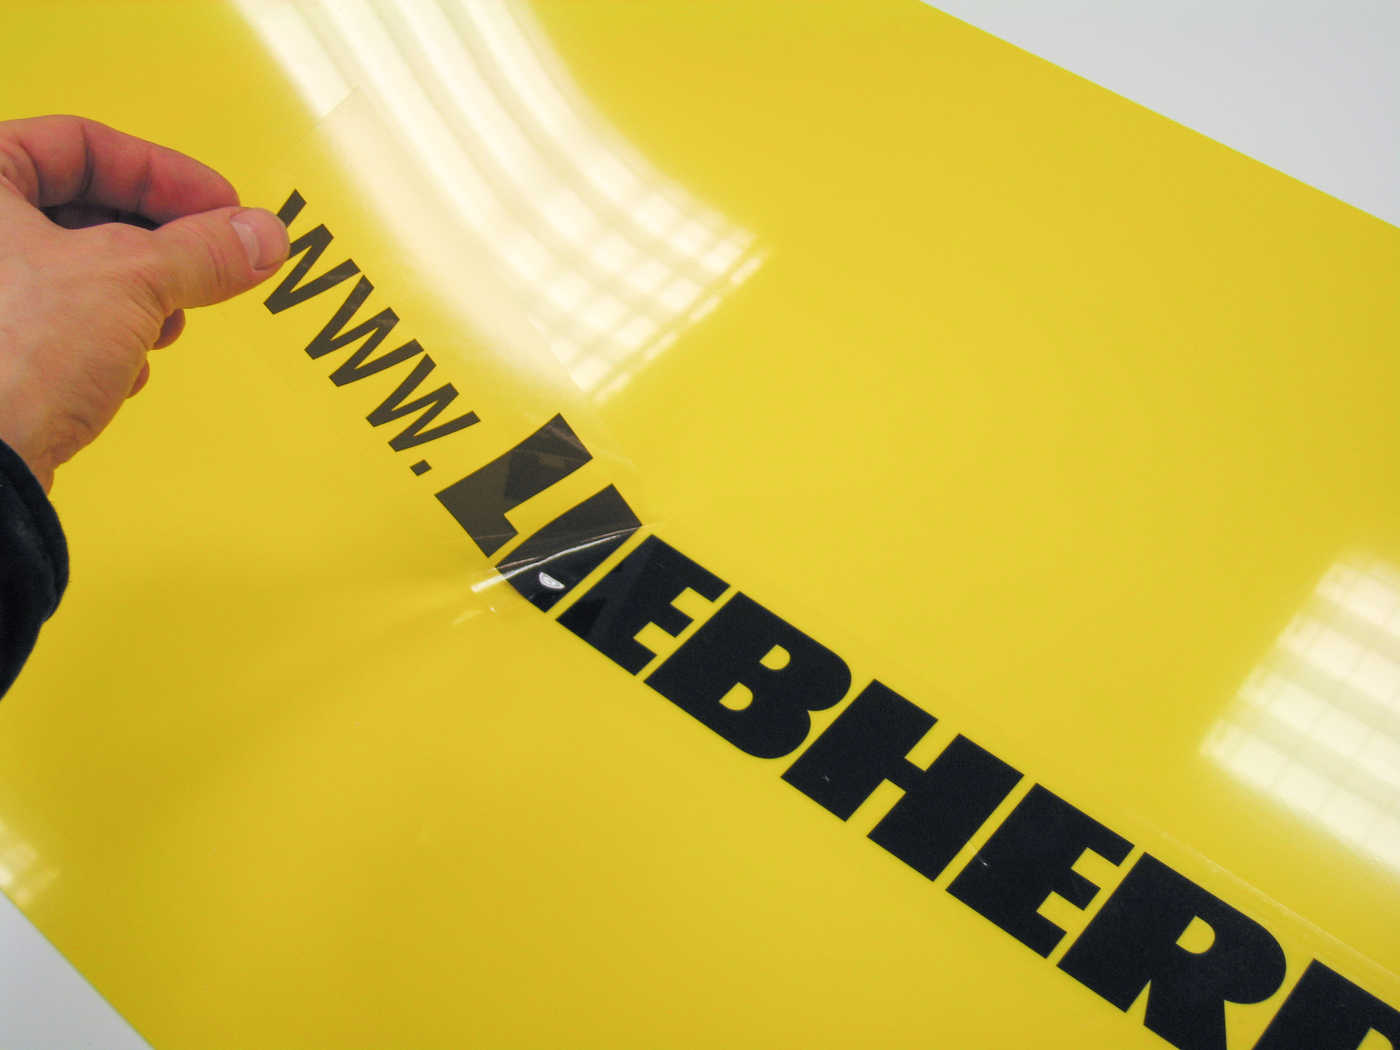 Gjennomsiktig selvklebende merke med Liebherr-logo monteres på gul bakplate.